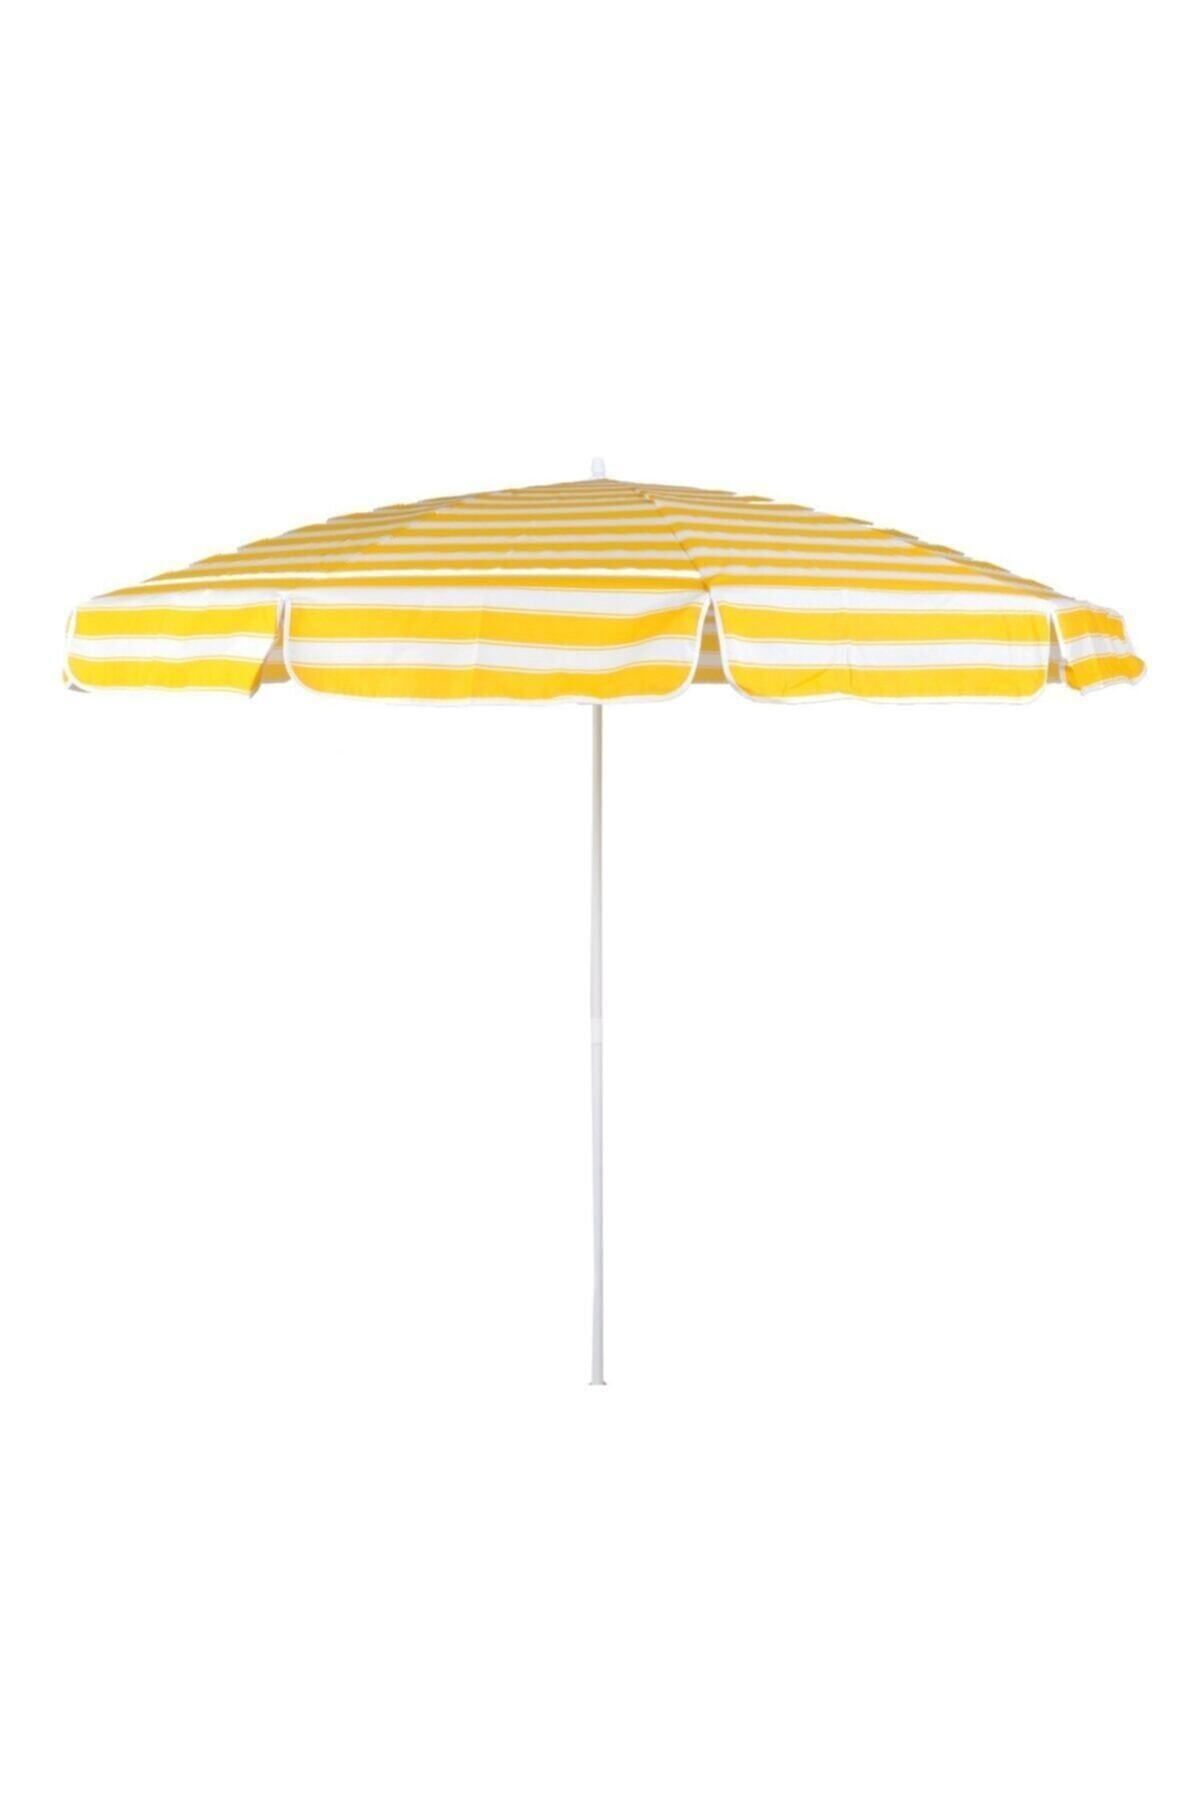 Zey Camping Zeycamping Plaj Bahçe Kamp Şemsiyesi Sarı-beyaz 200 Cm Tasıma Çantası